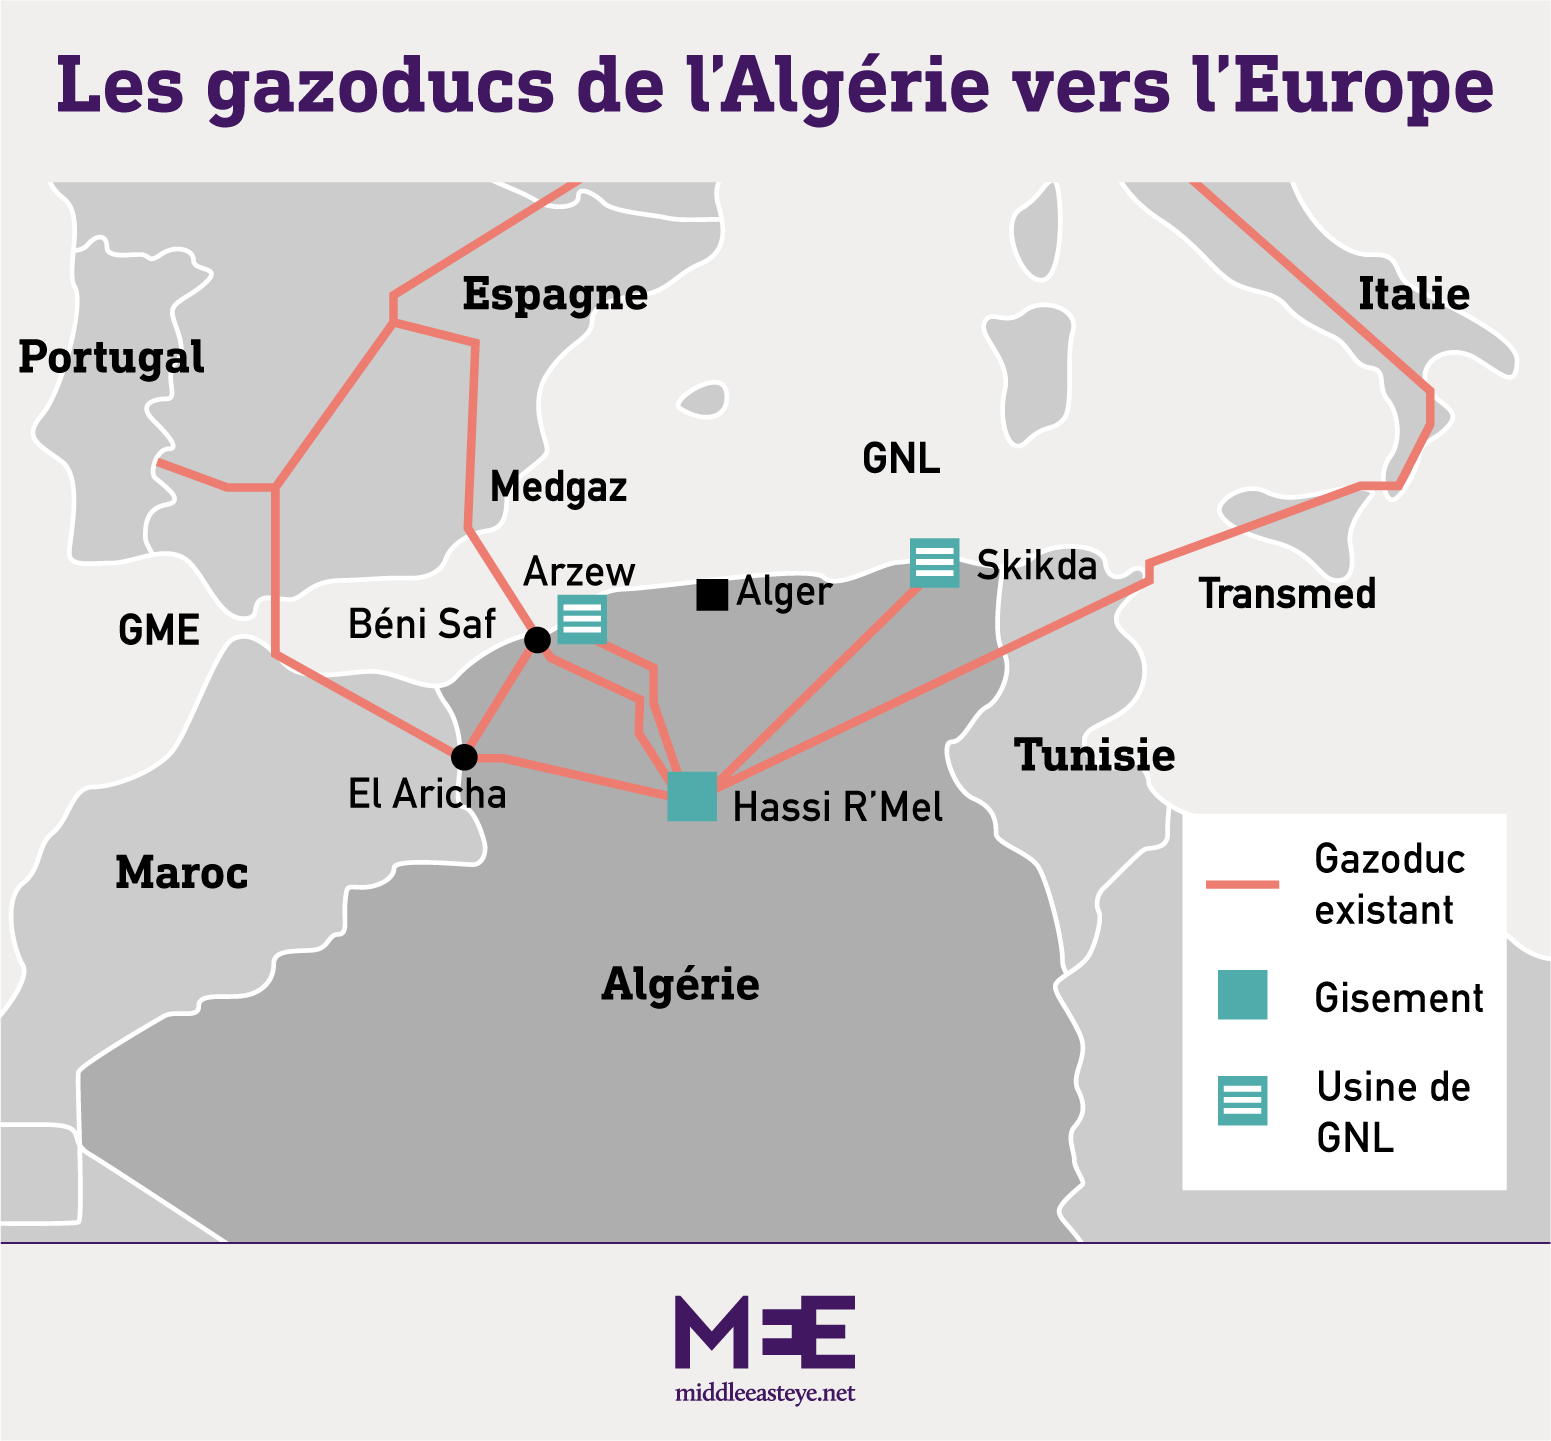 Les gazoducs de l’Algérie vers l’Europe (MEE/Mohamad Elaasar)